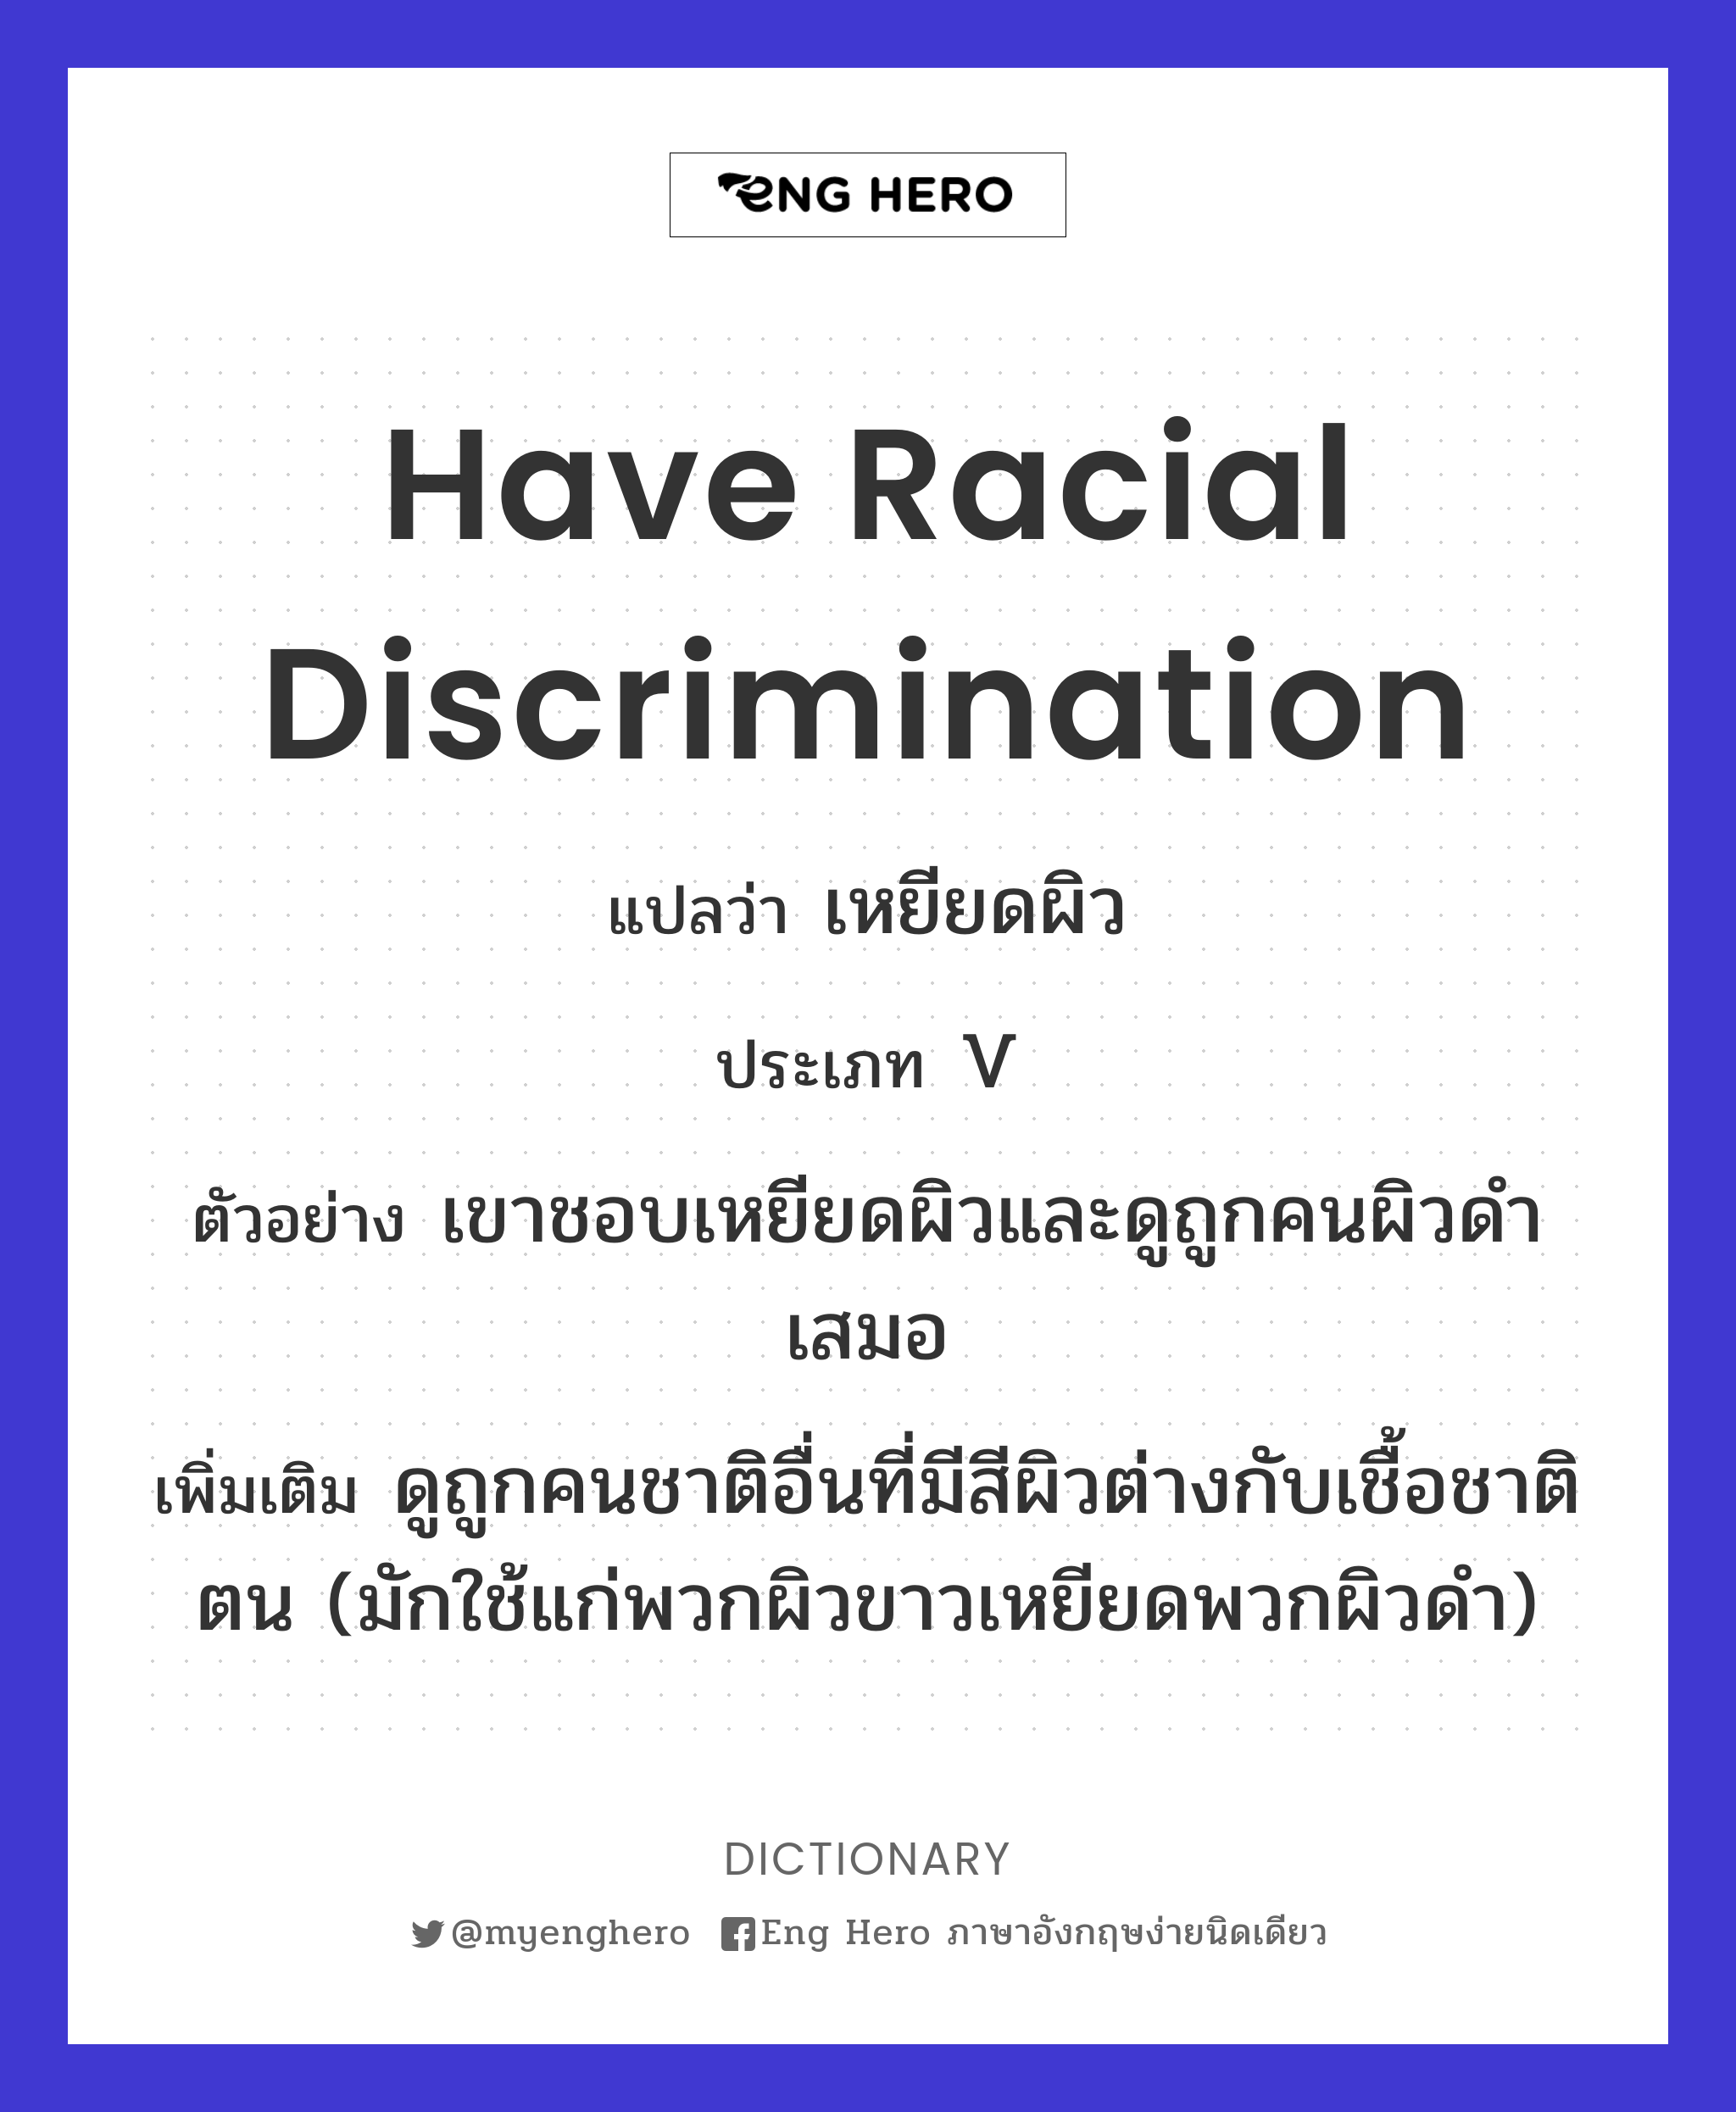 have racial discrimination